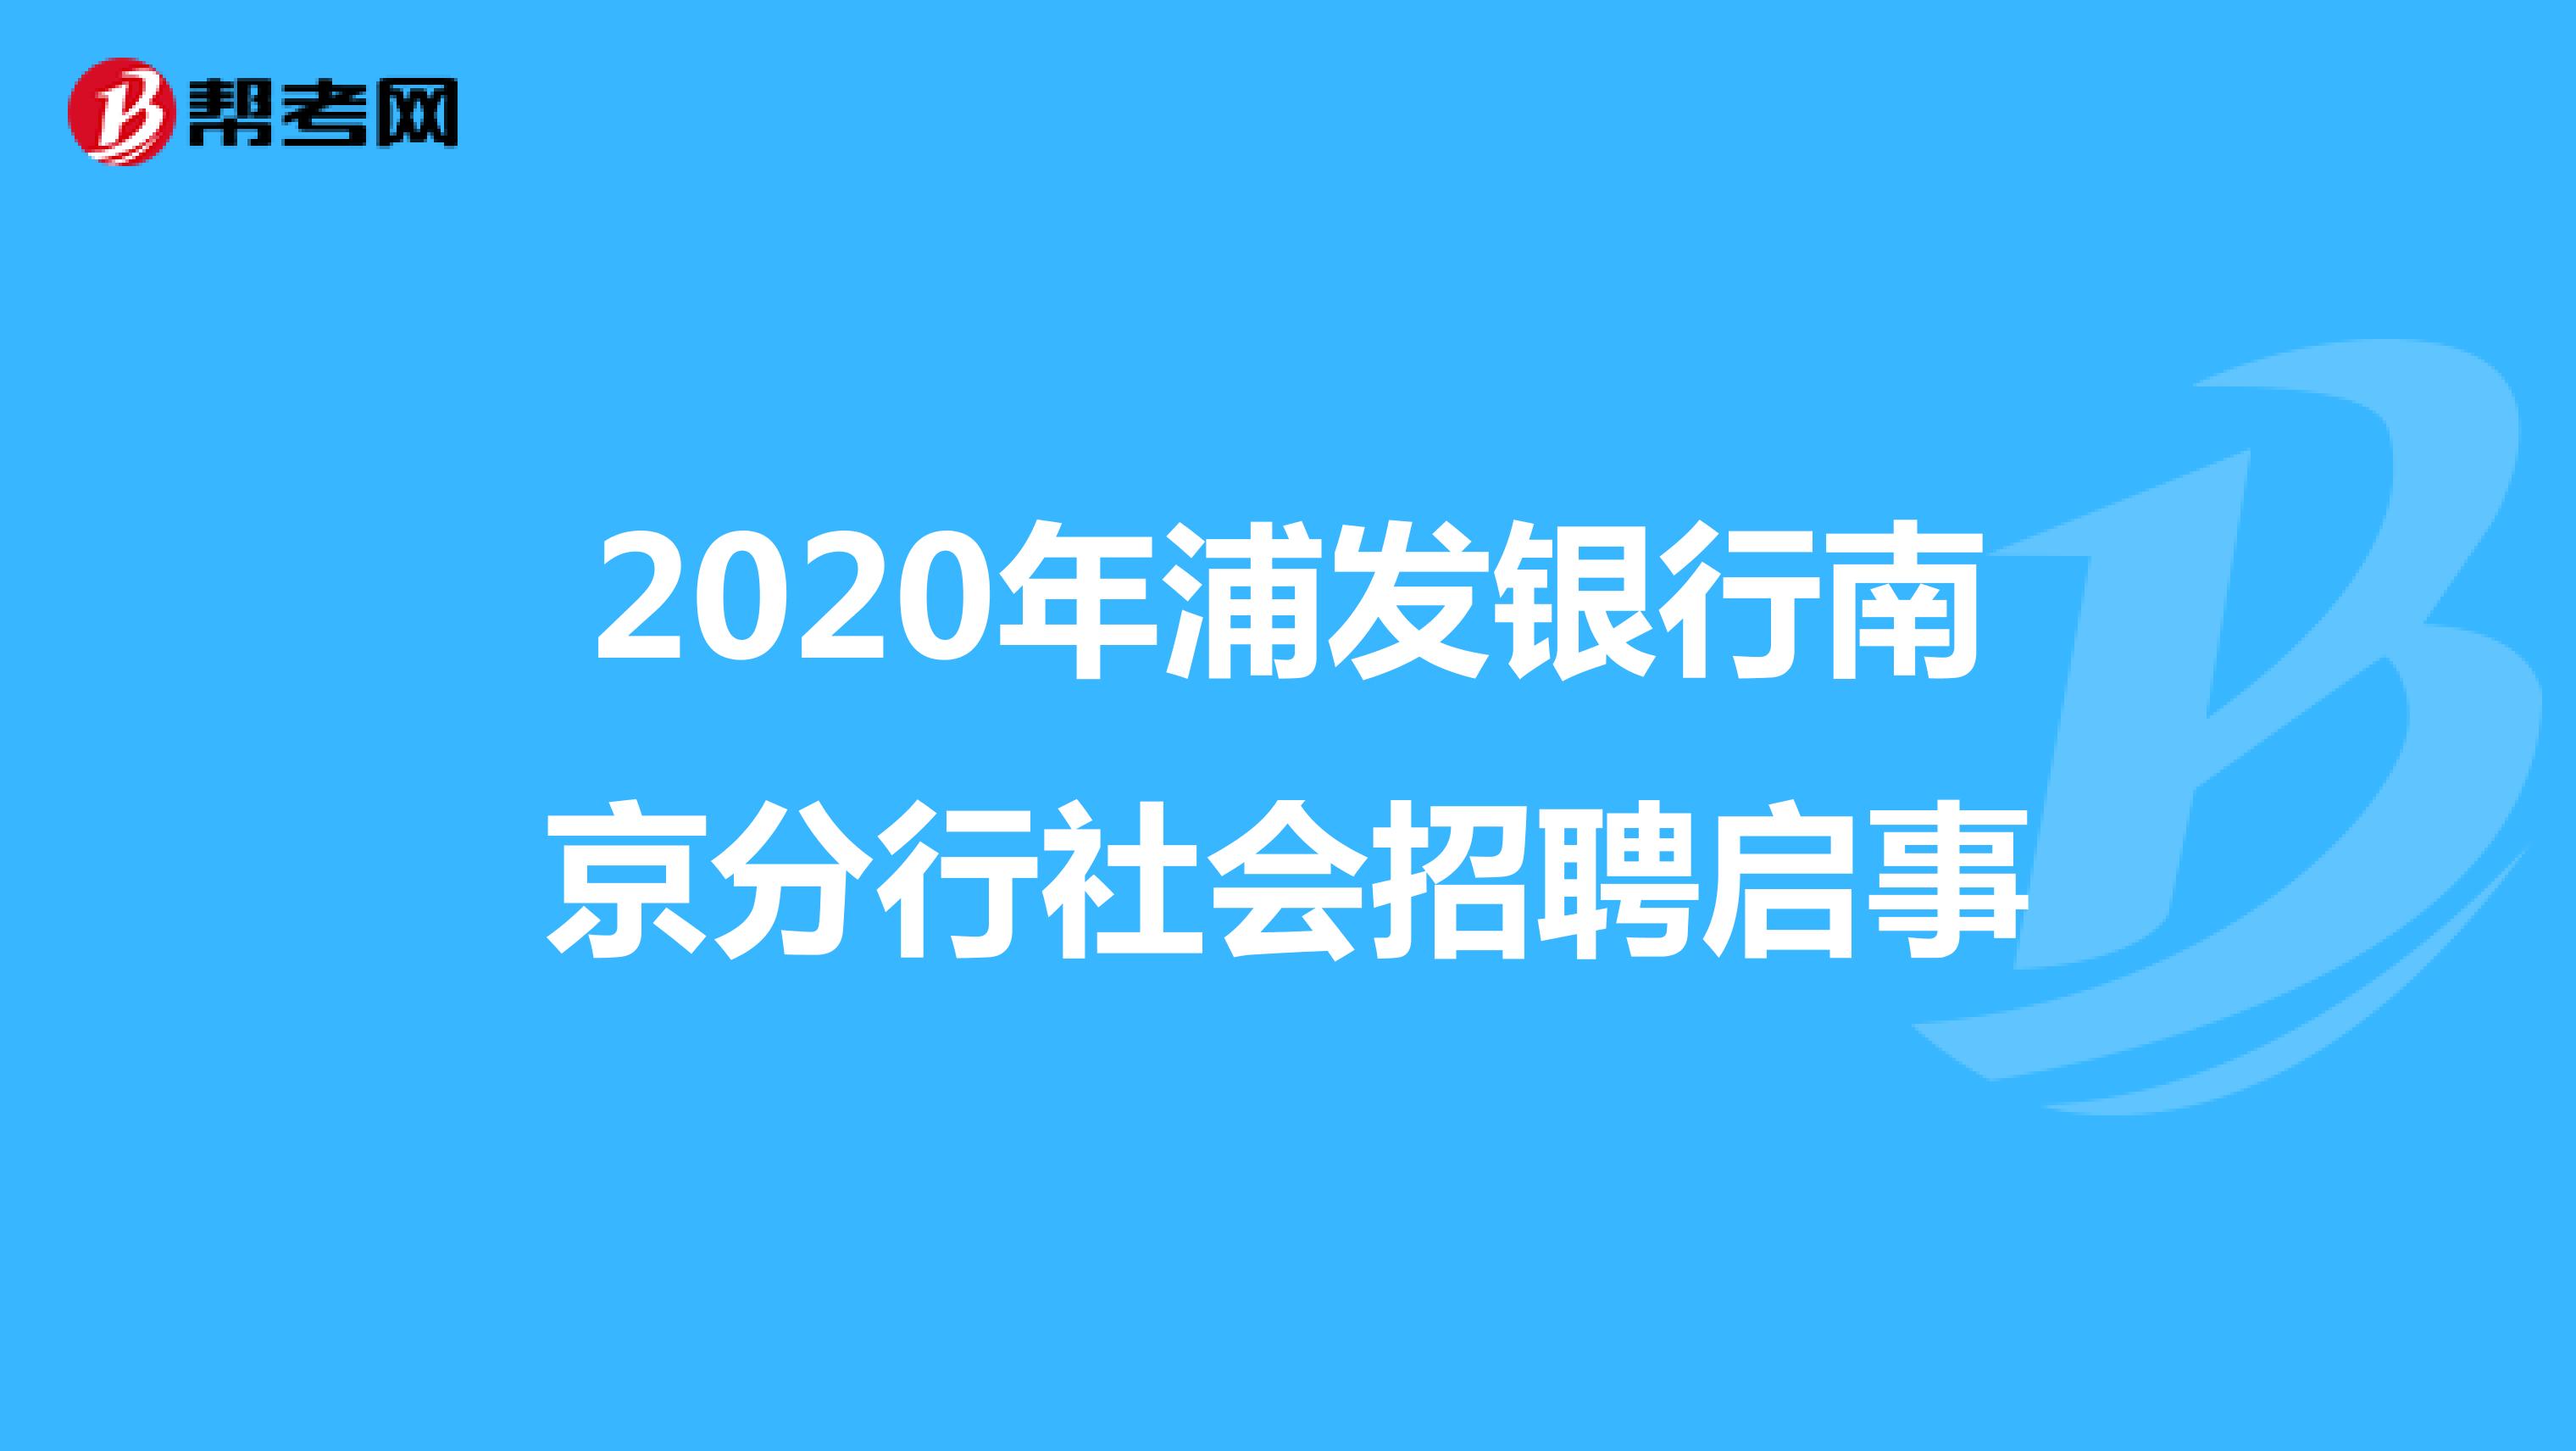 2020年浦发银行南京分行社会招聘启事